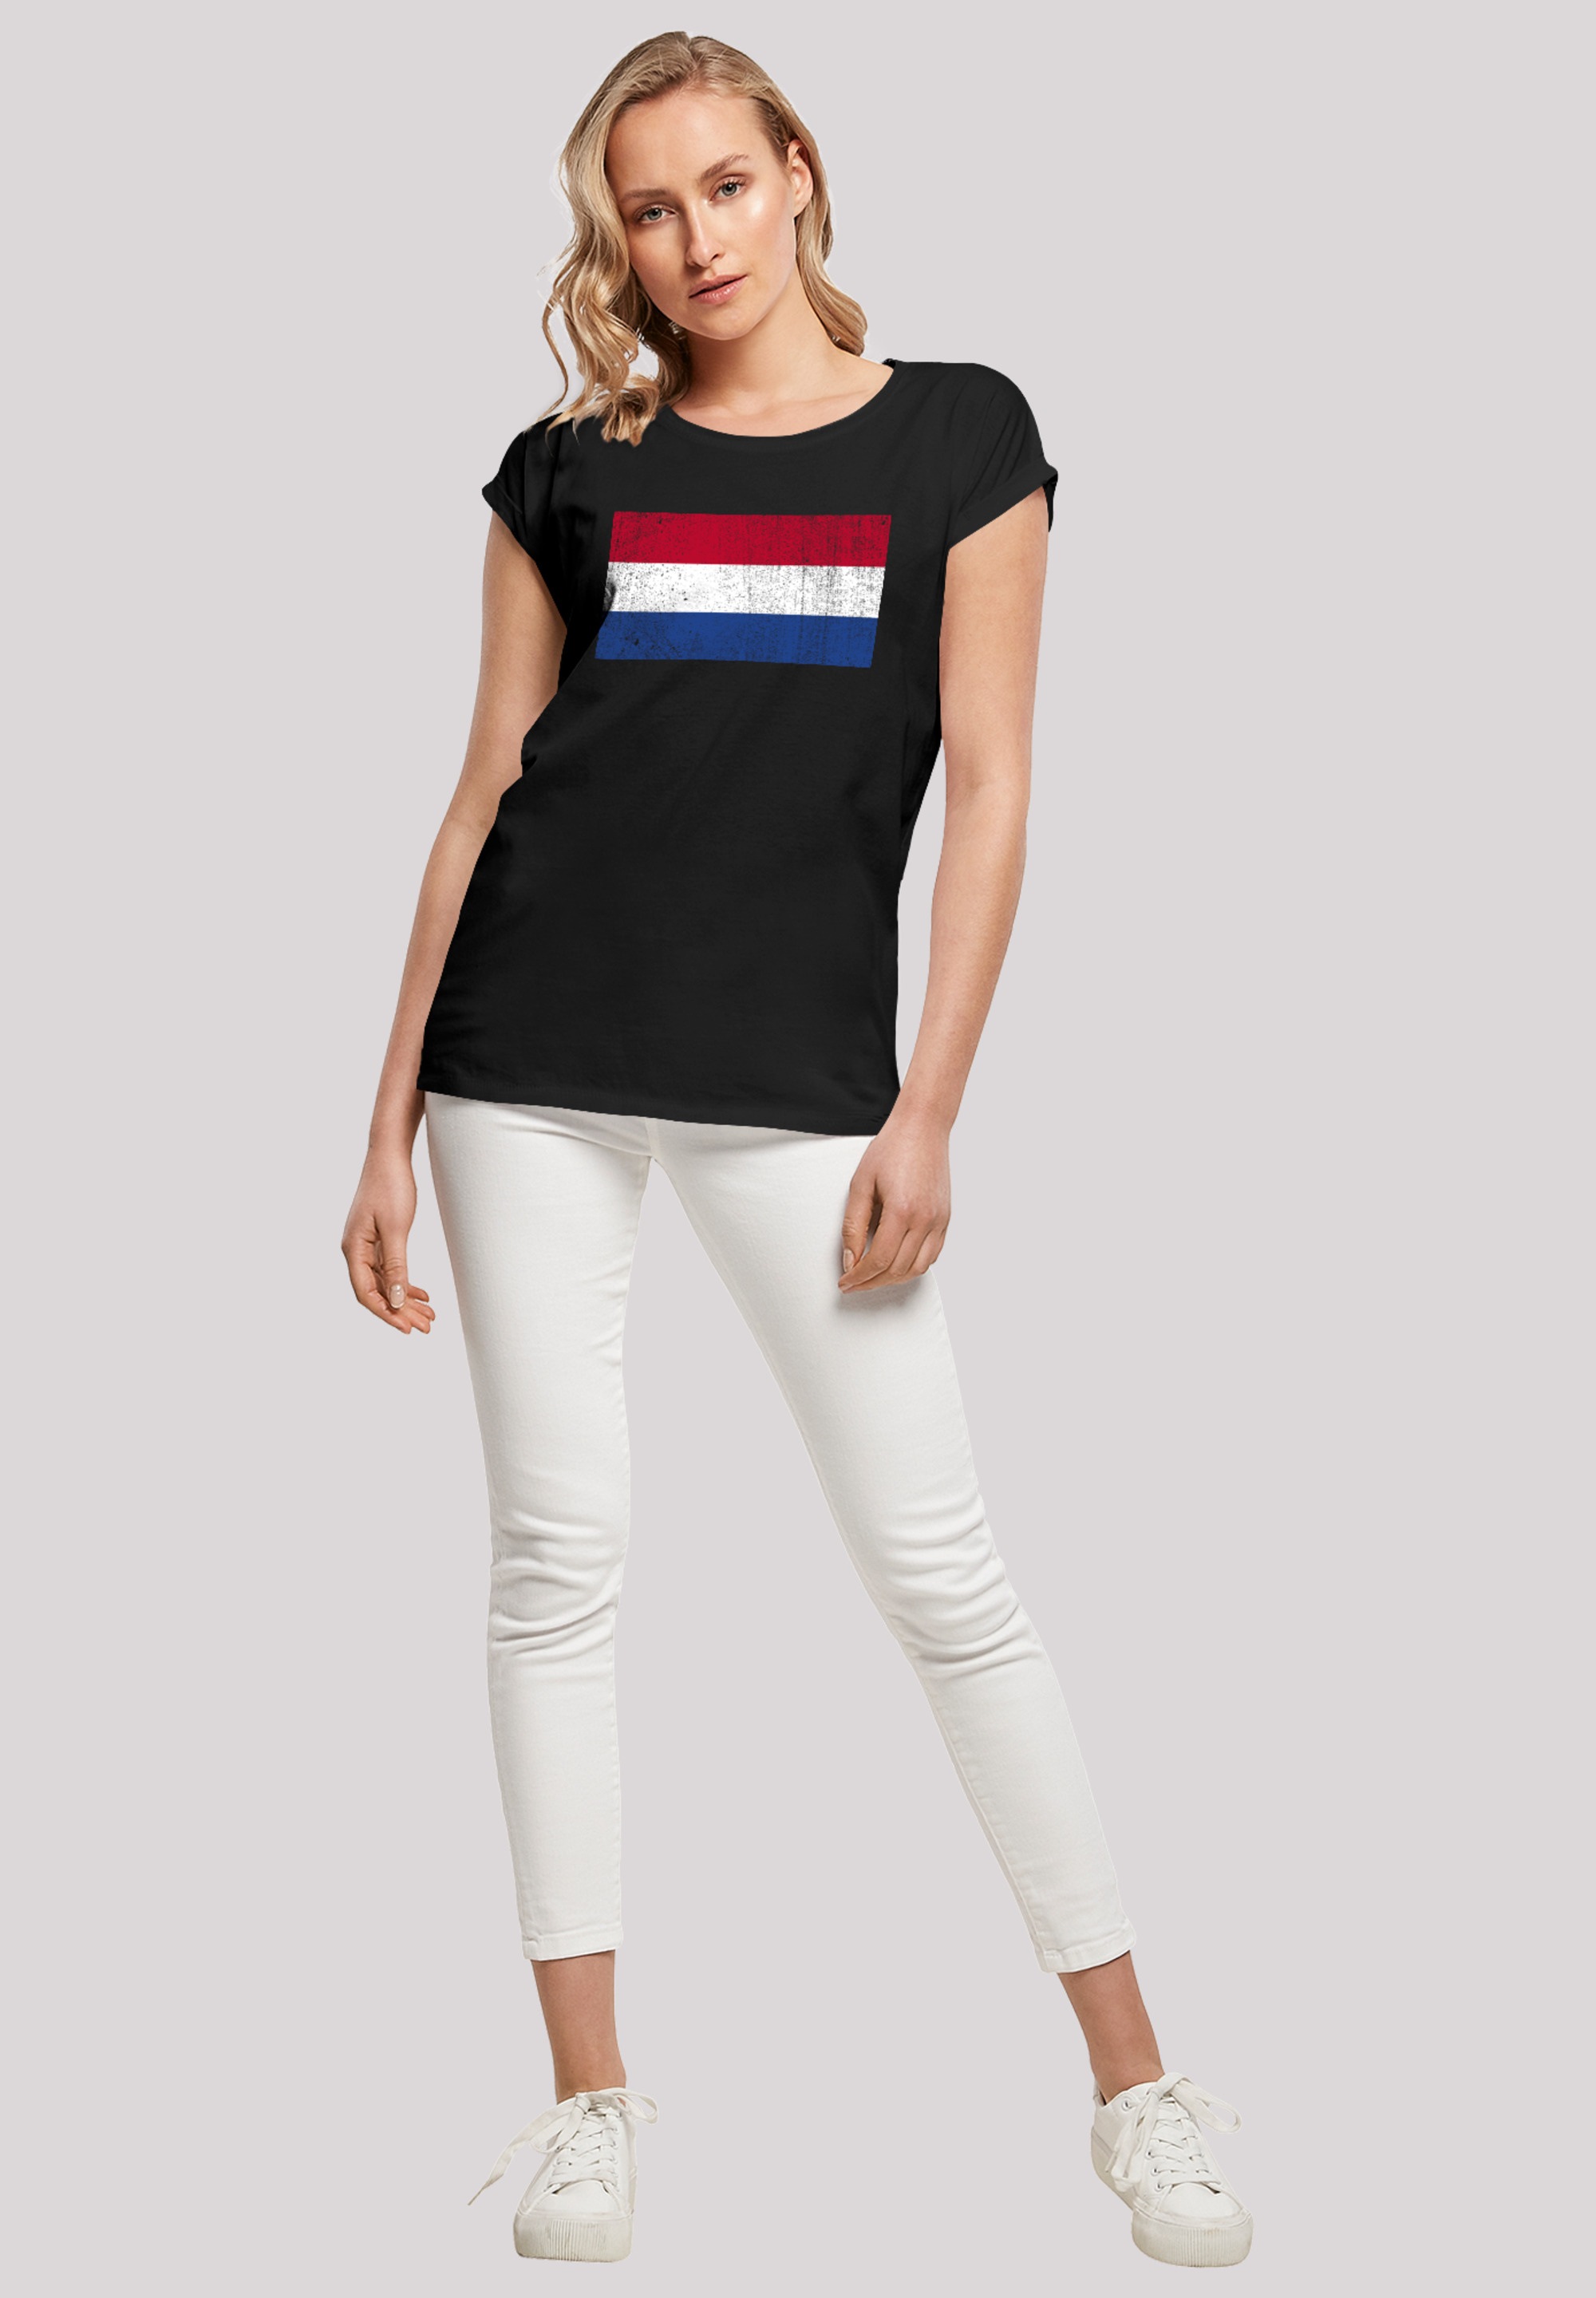 Flagge F4NT4STIC NIederlande BAUR | Angabe Holland T-Shirt für distressed«, »Netherlands bestellen Keine